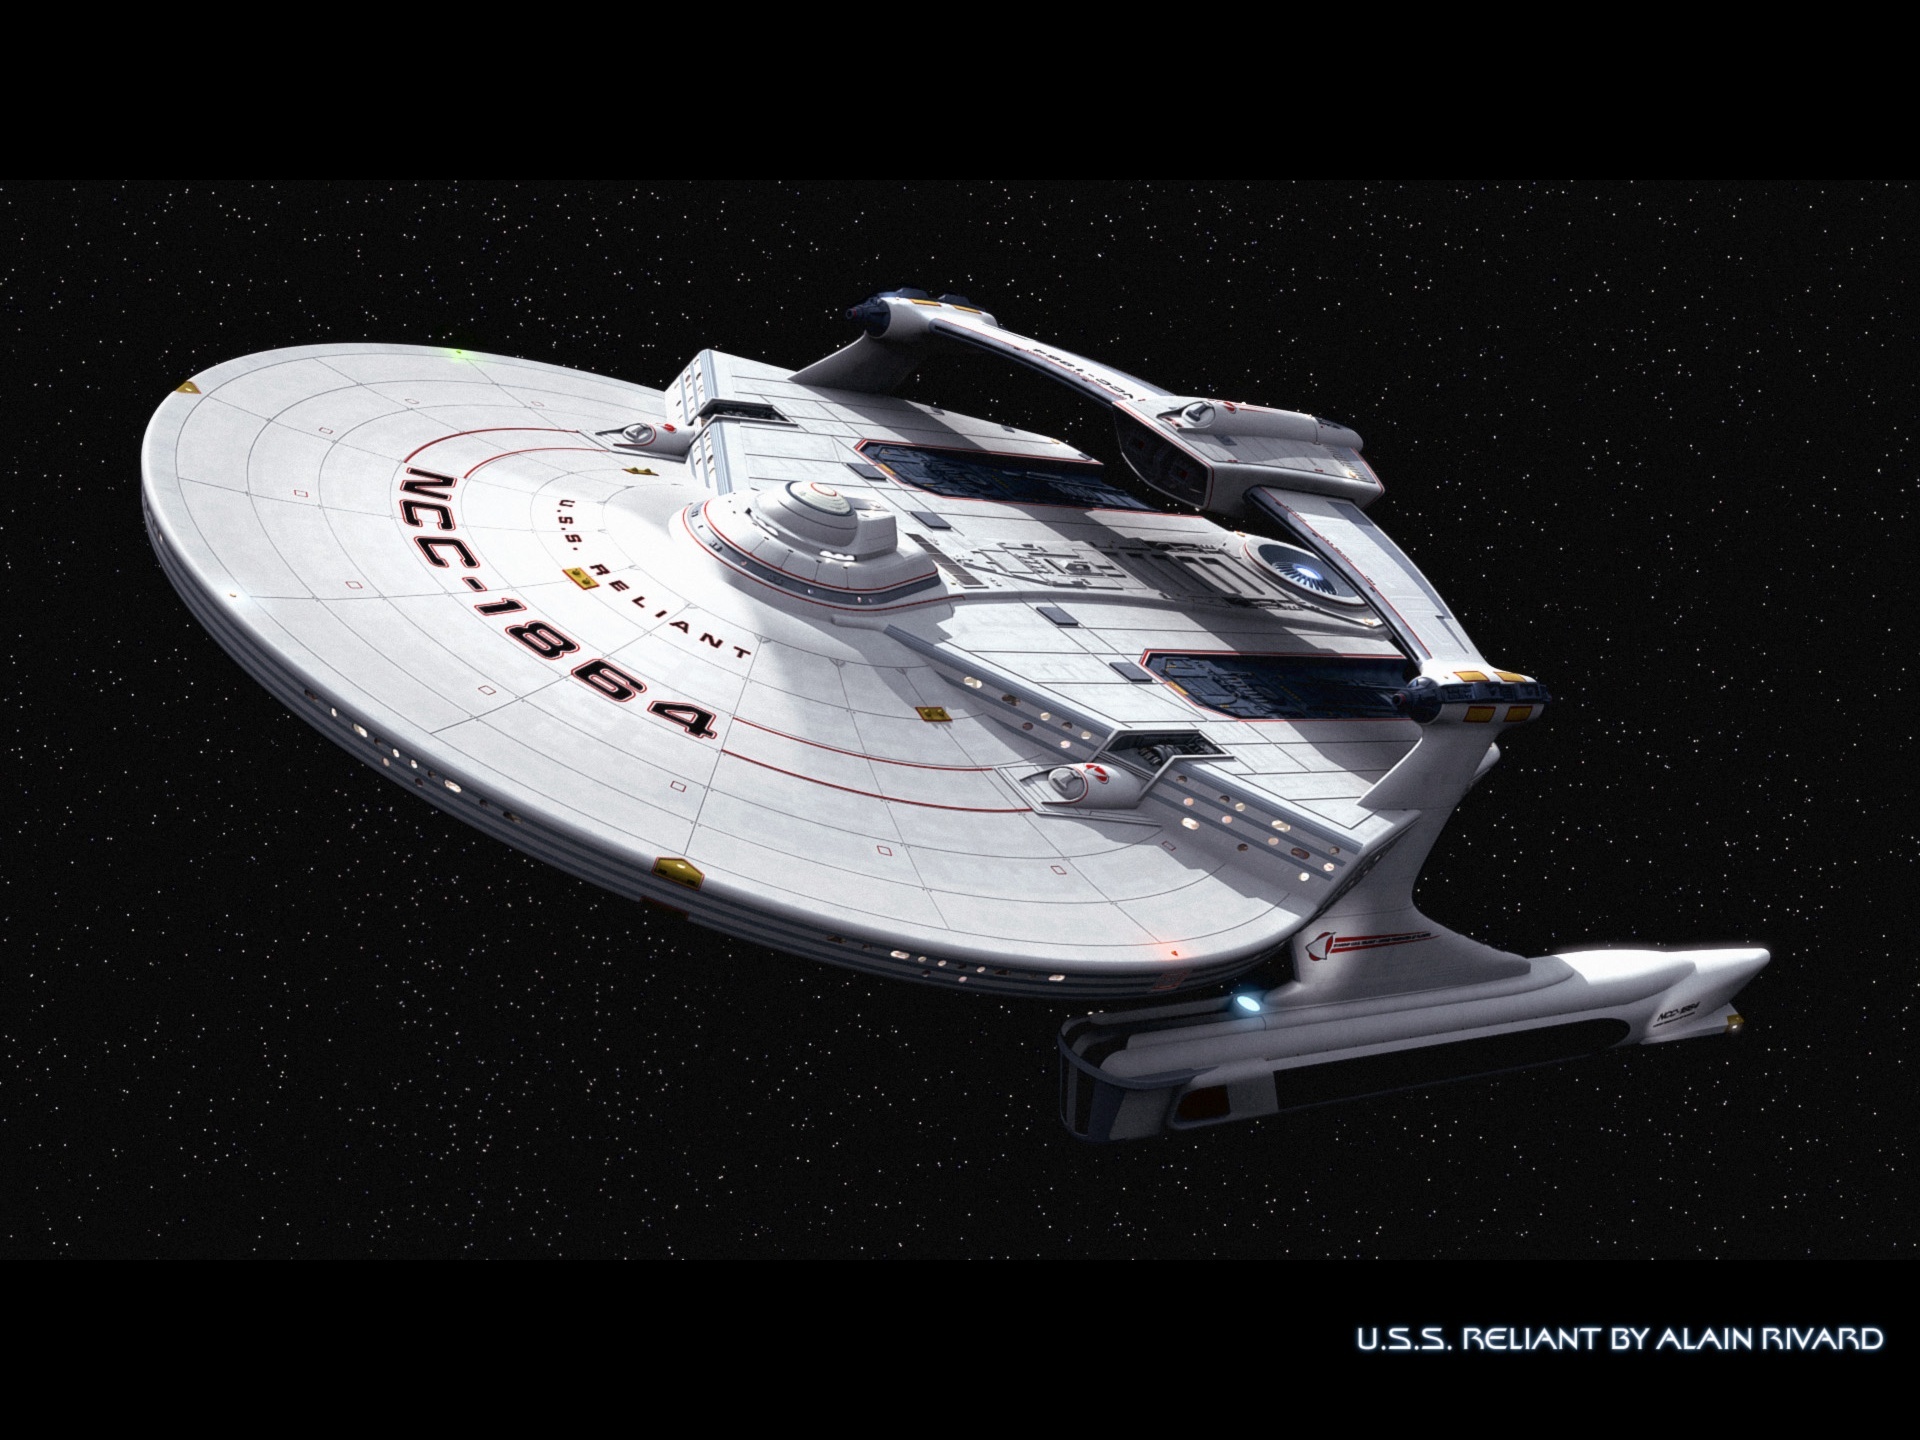 Trek Universe Uss Reliant Star Puter Desktop Wallpaper